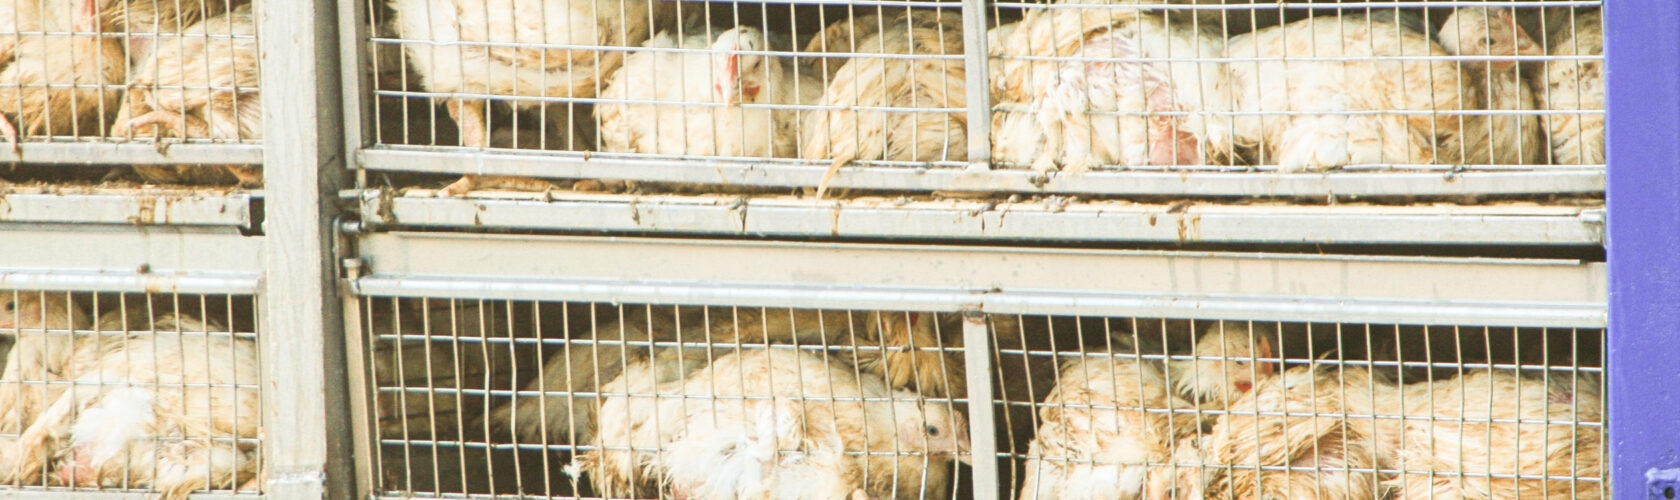 Beeld: kippen dicht op elkaar in een transportwagen